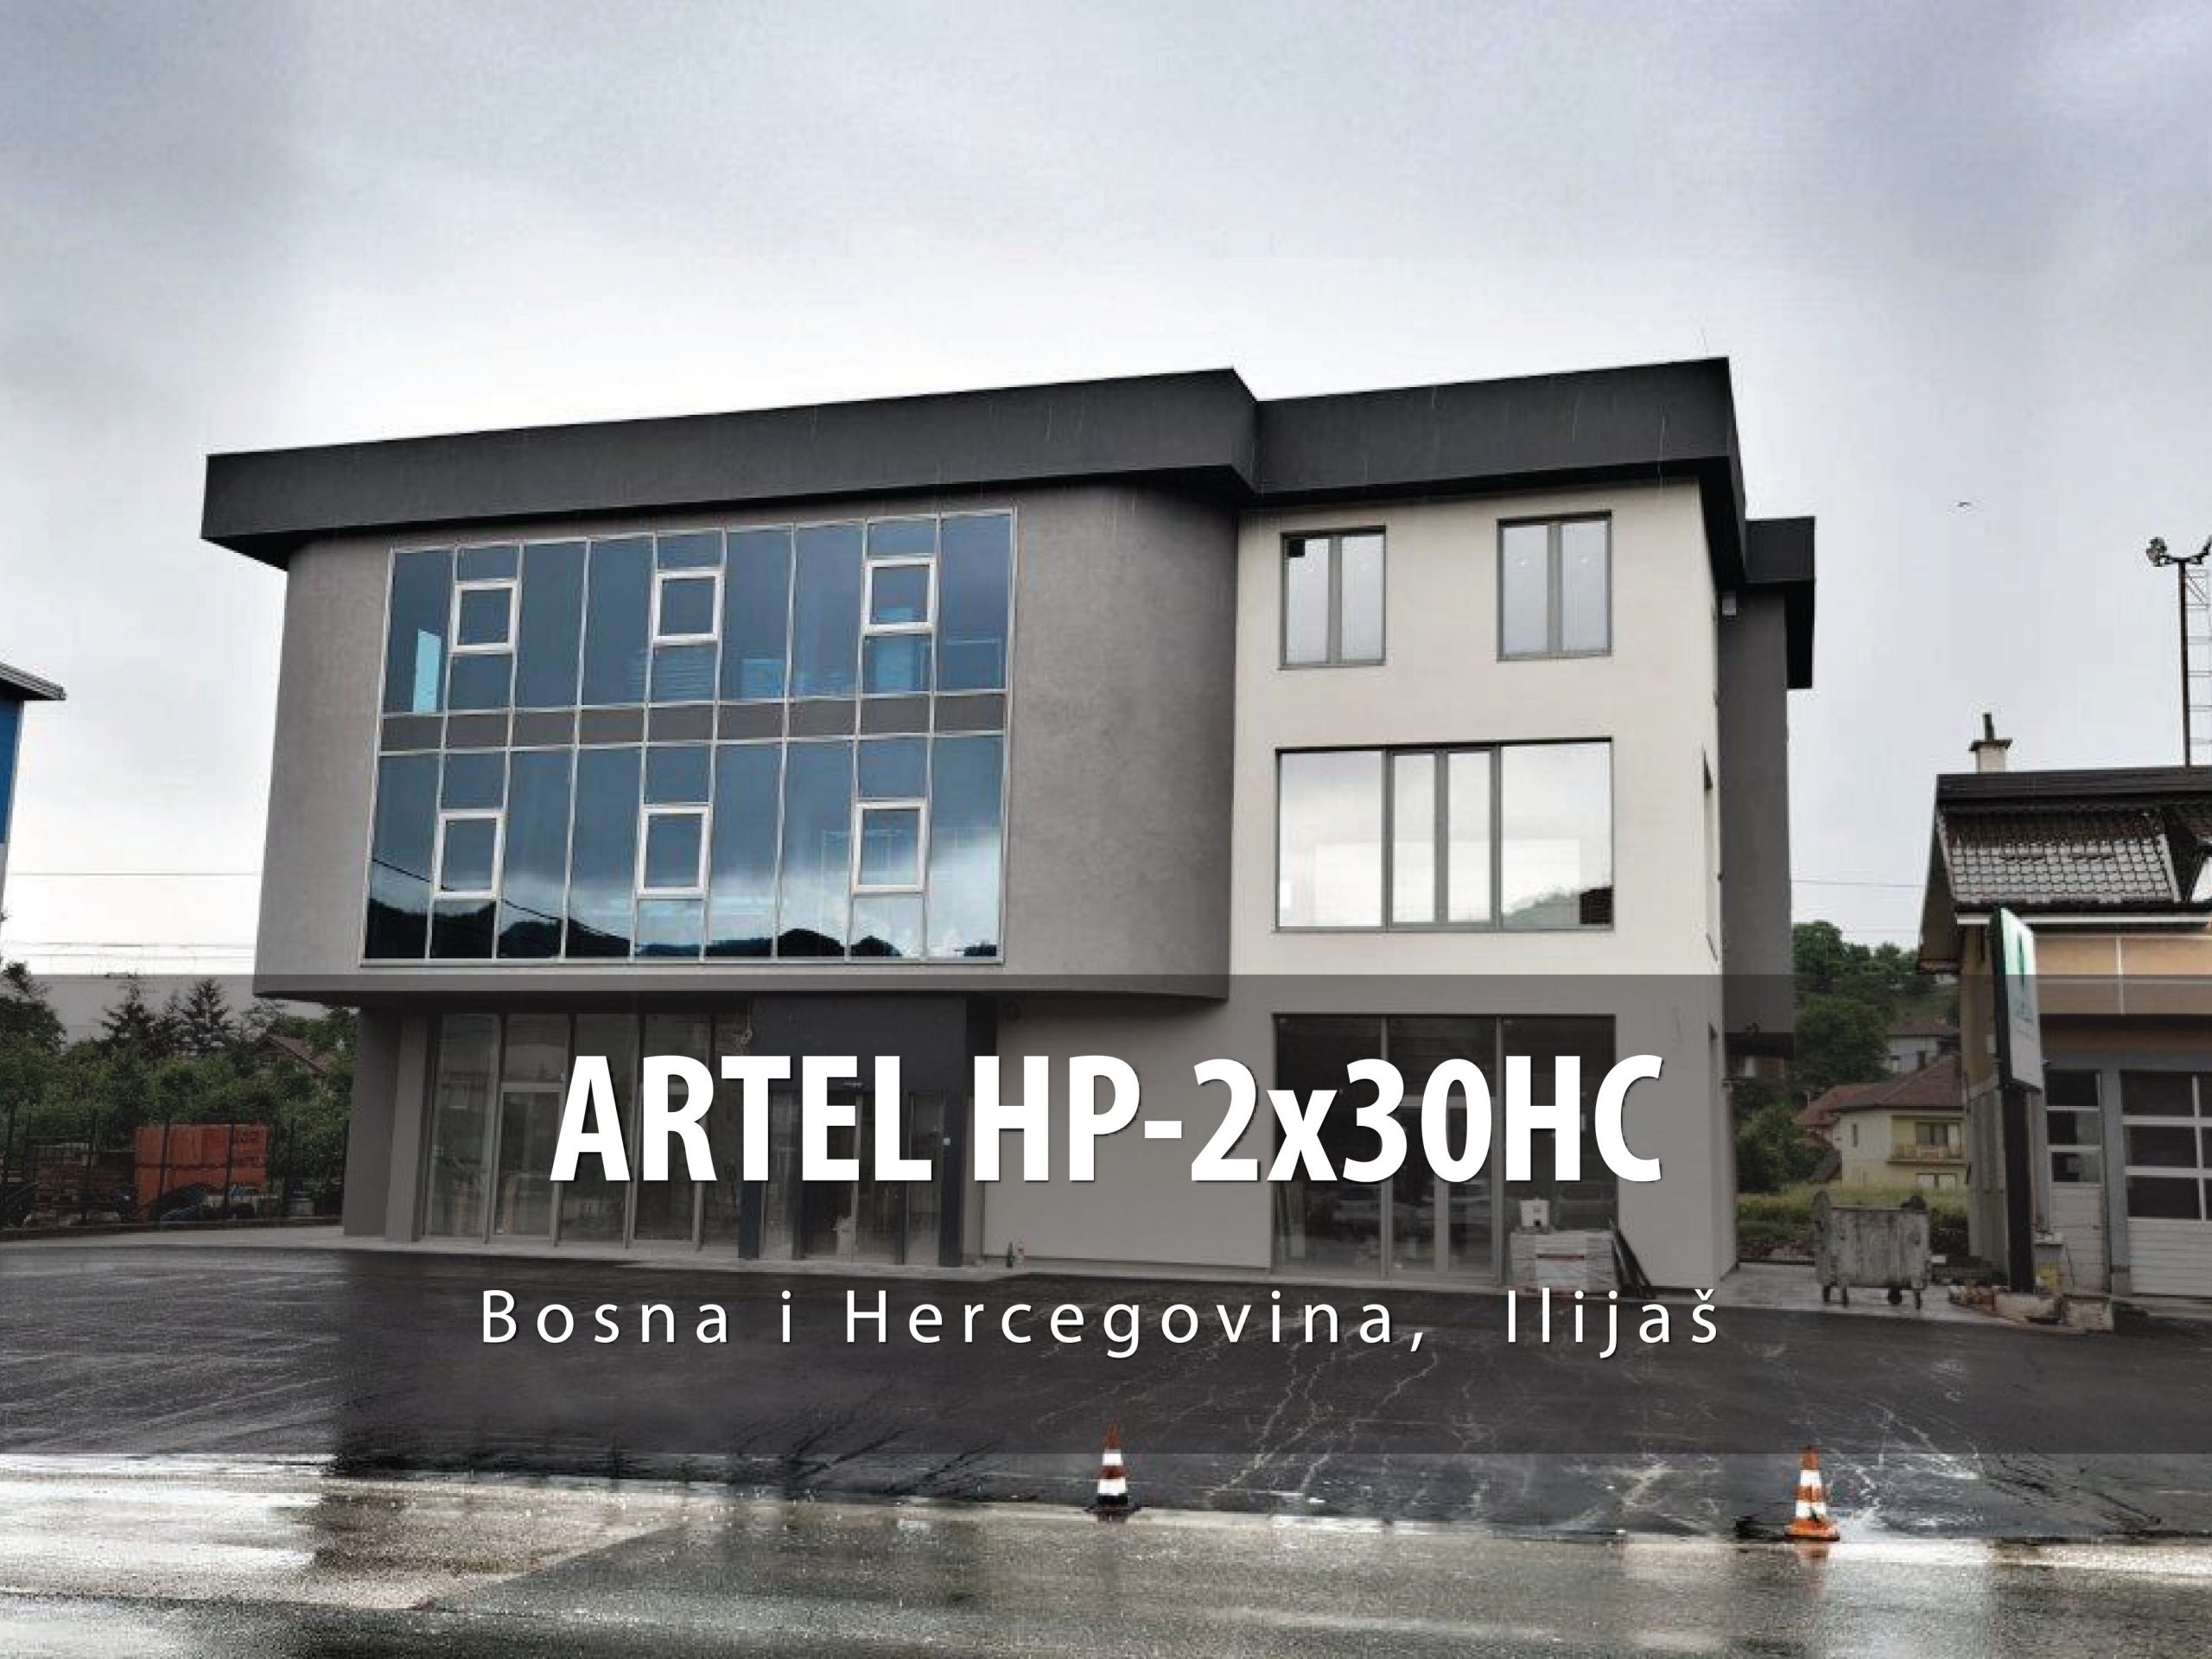 BiH Ilijas ARTEL HP-2x30HC